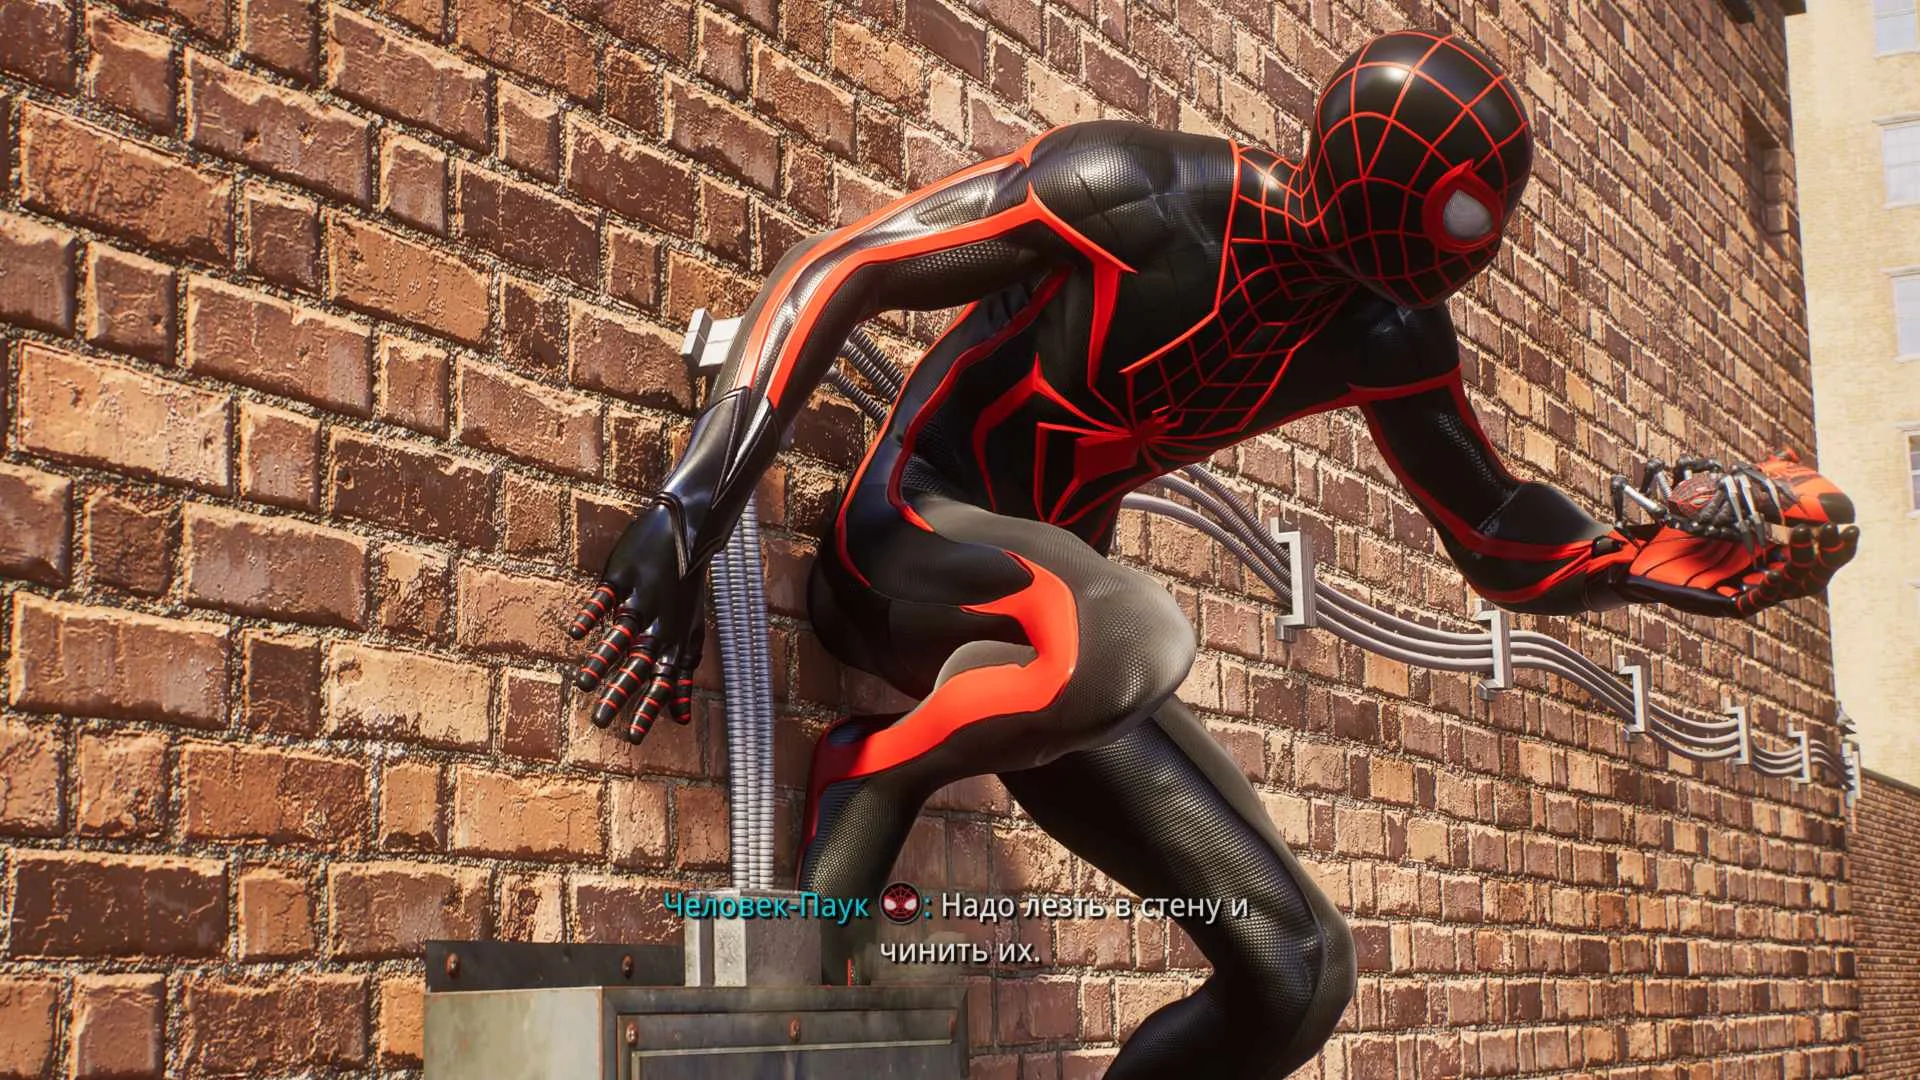 Обзор Marvel Spider-Man 2. Непомерно затянутый и бедный на новые идеи сиквел - фото 1